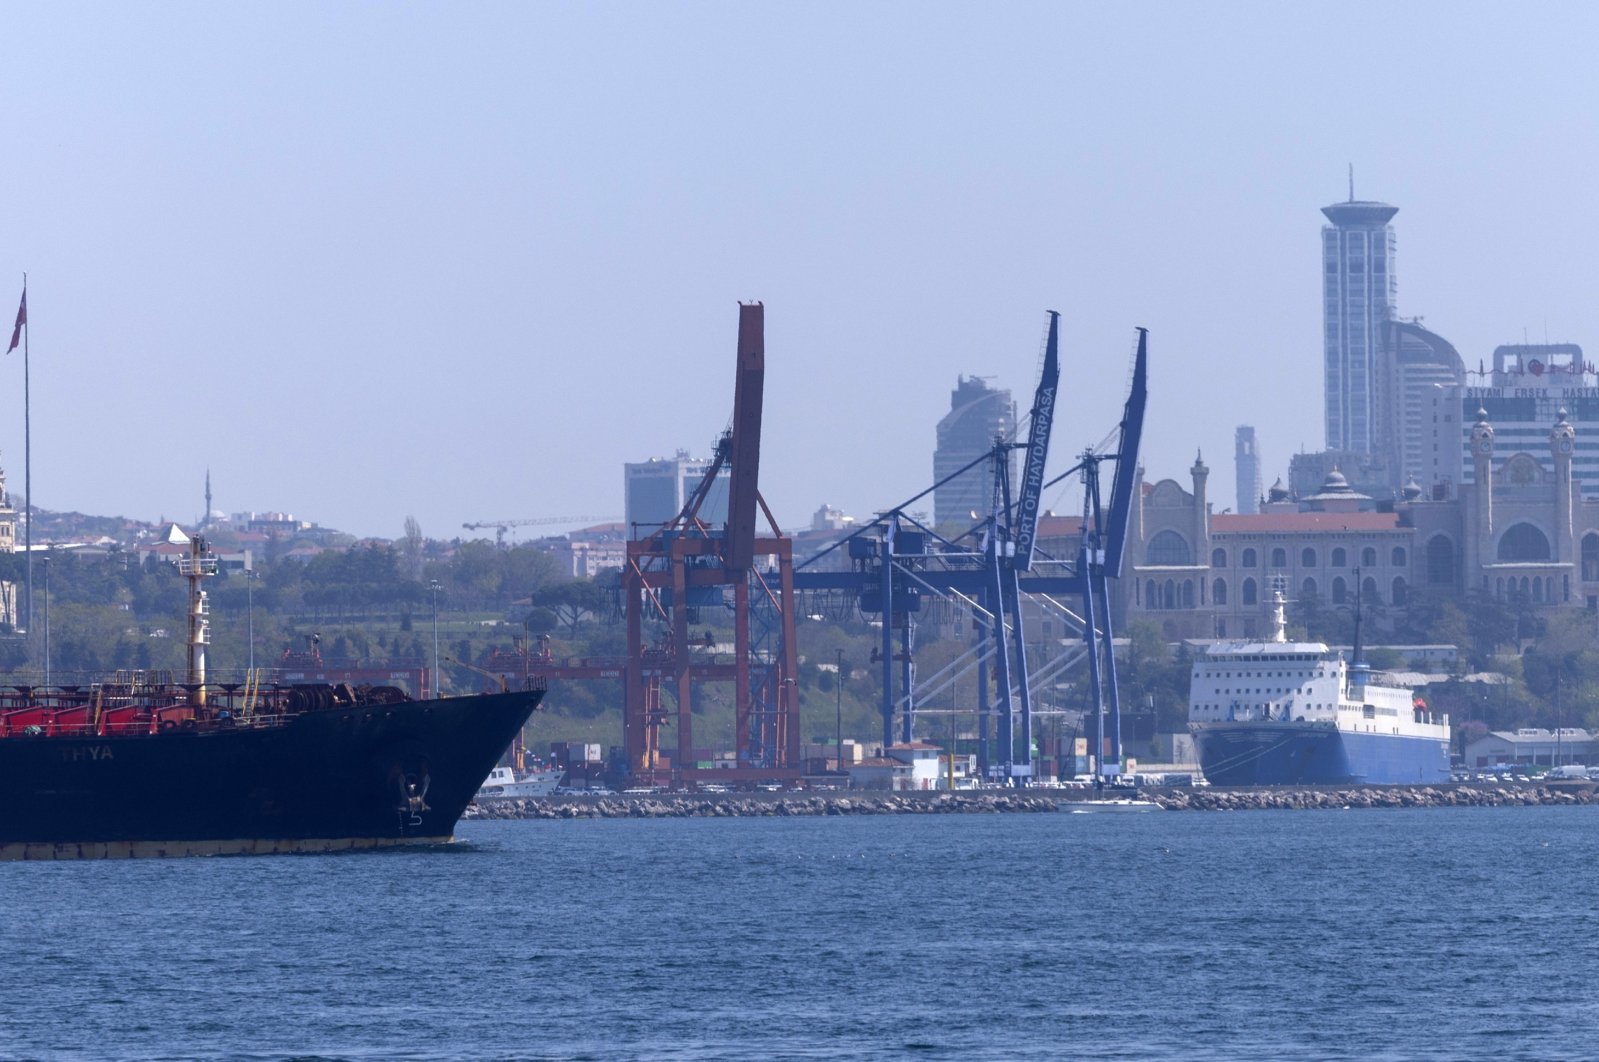 Daralma eğiliminin hızlanmasıyla birlikte Türkiye'nin dış ticaret açığı yeniden azaldı